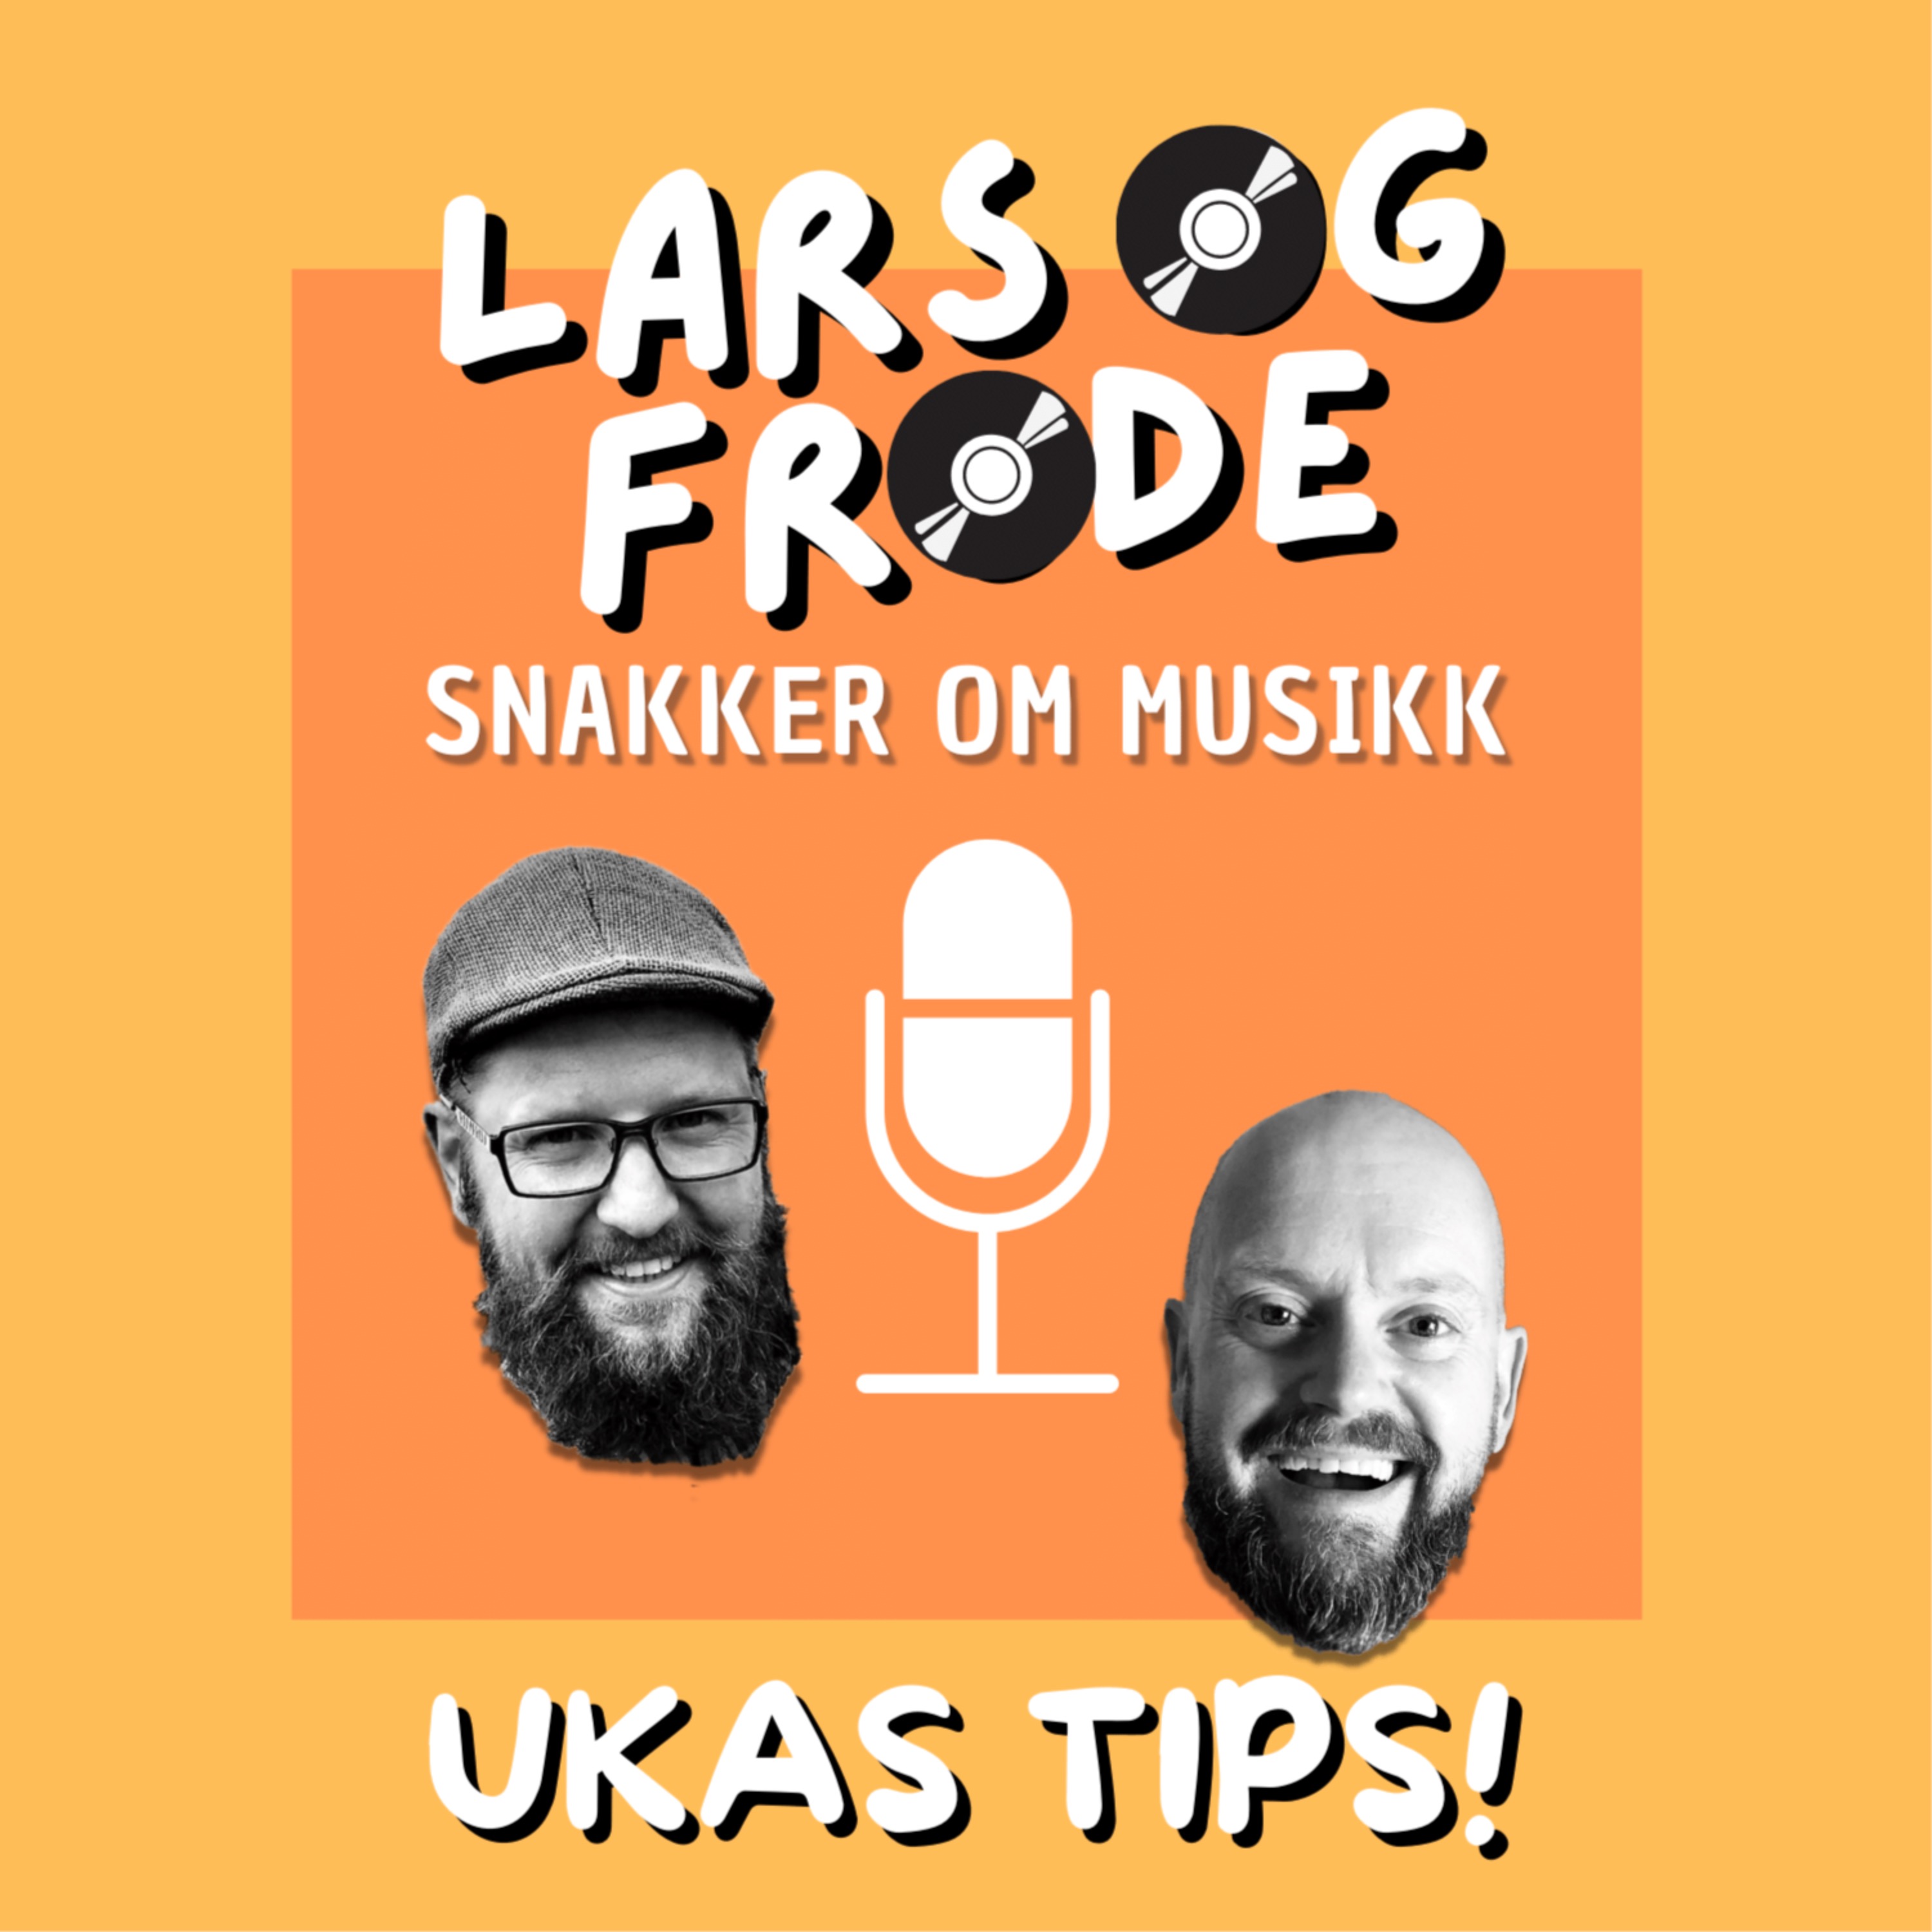 Ukas tips: Mørk og rocka svenskpop Image